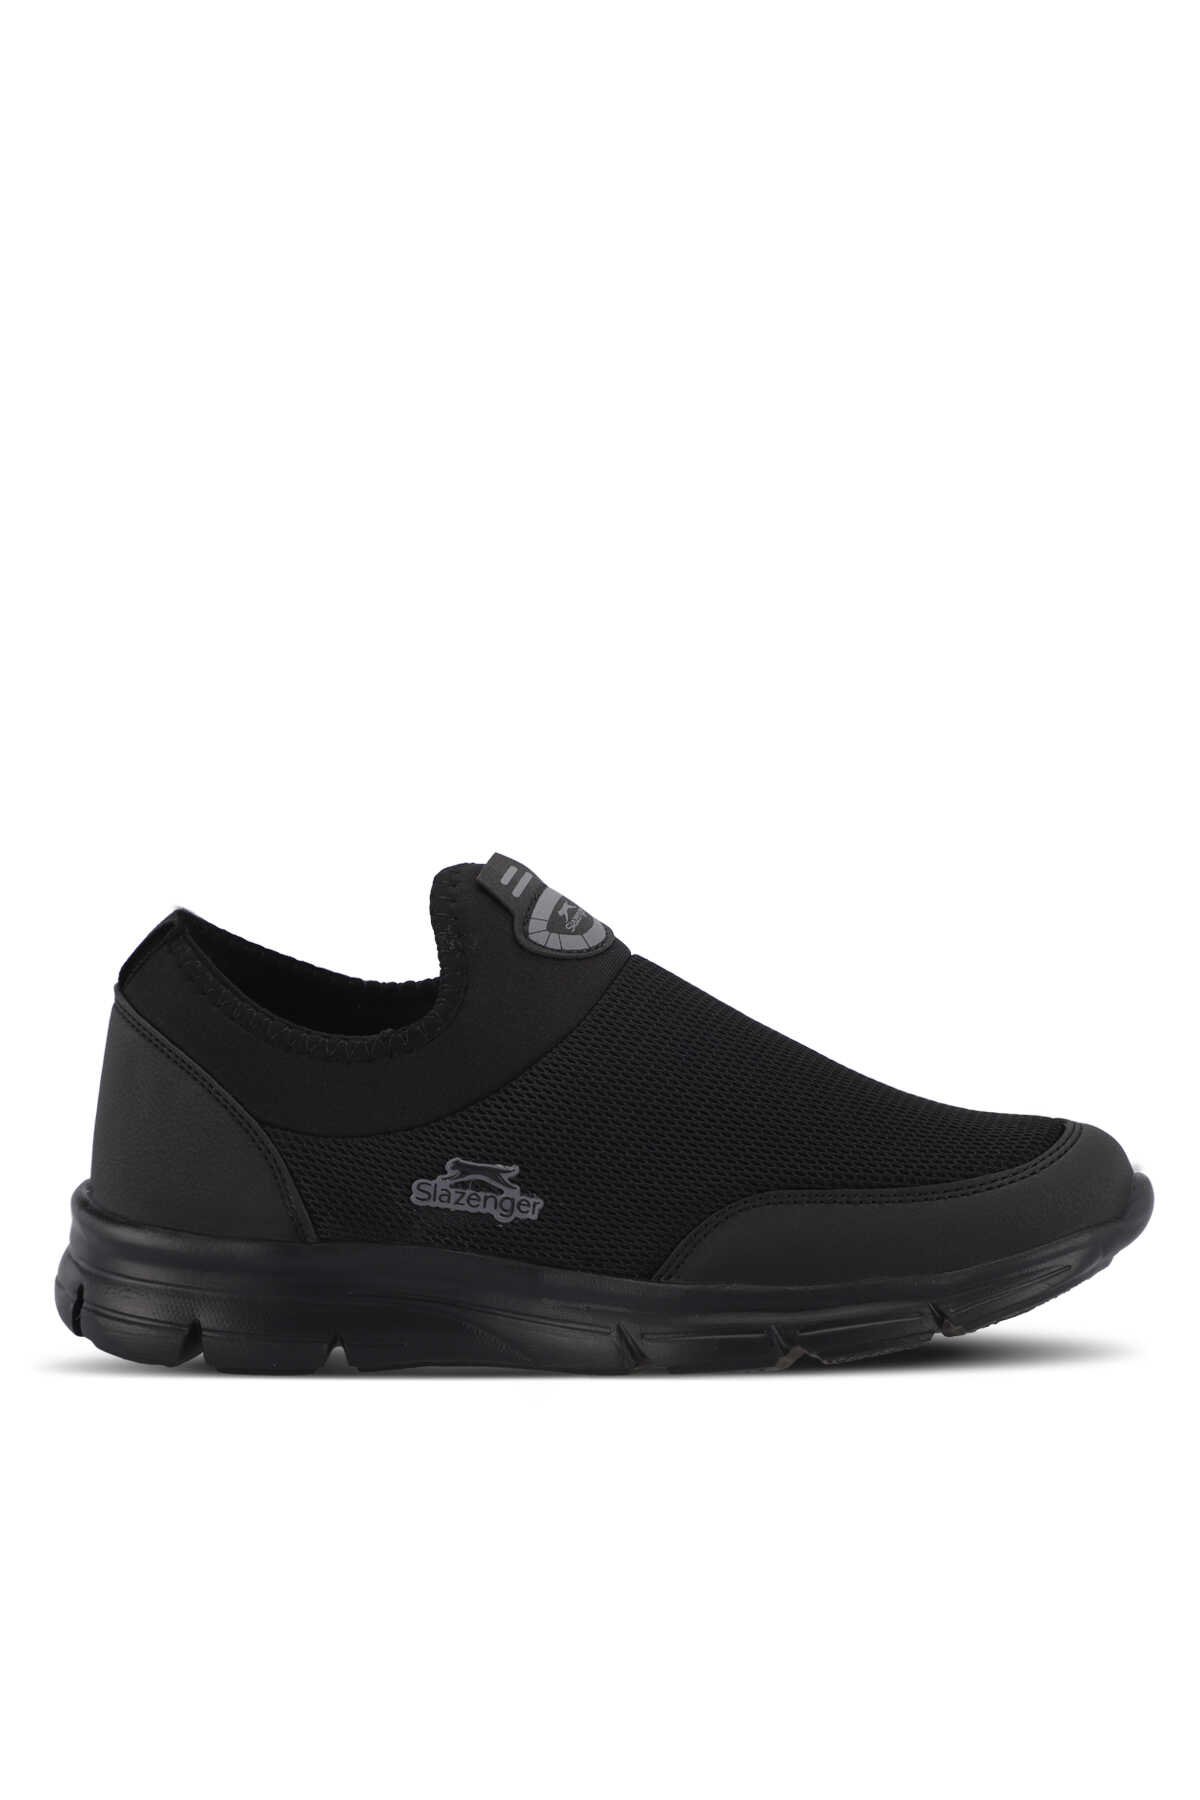 Slazenger - Slazenger EDINBURG Kadın Sneaker Ayakkabı Siyah / Siyah